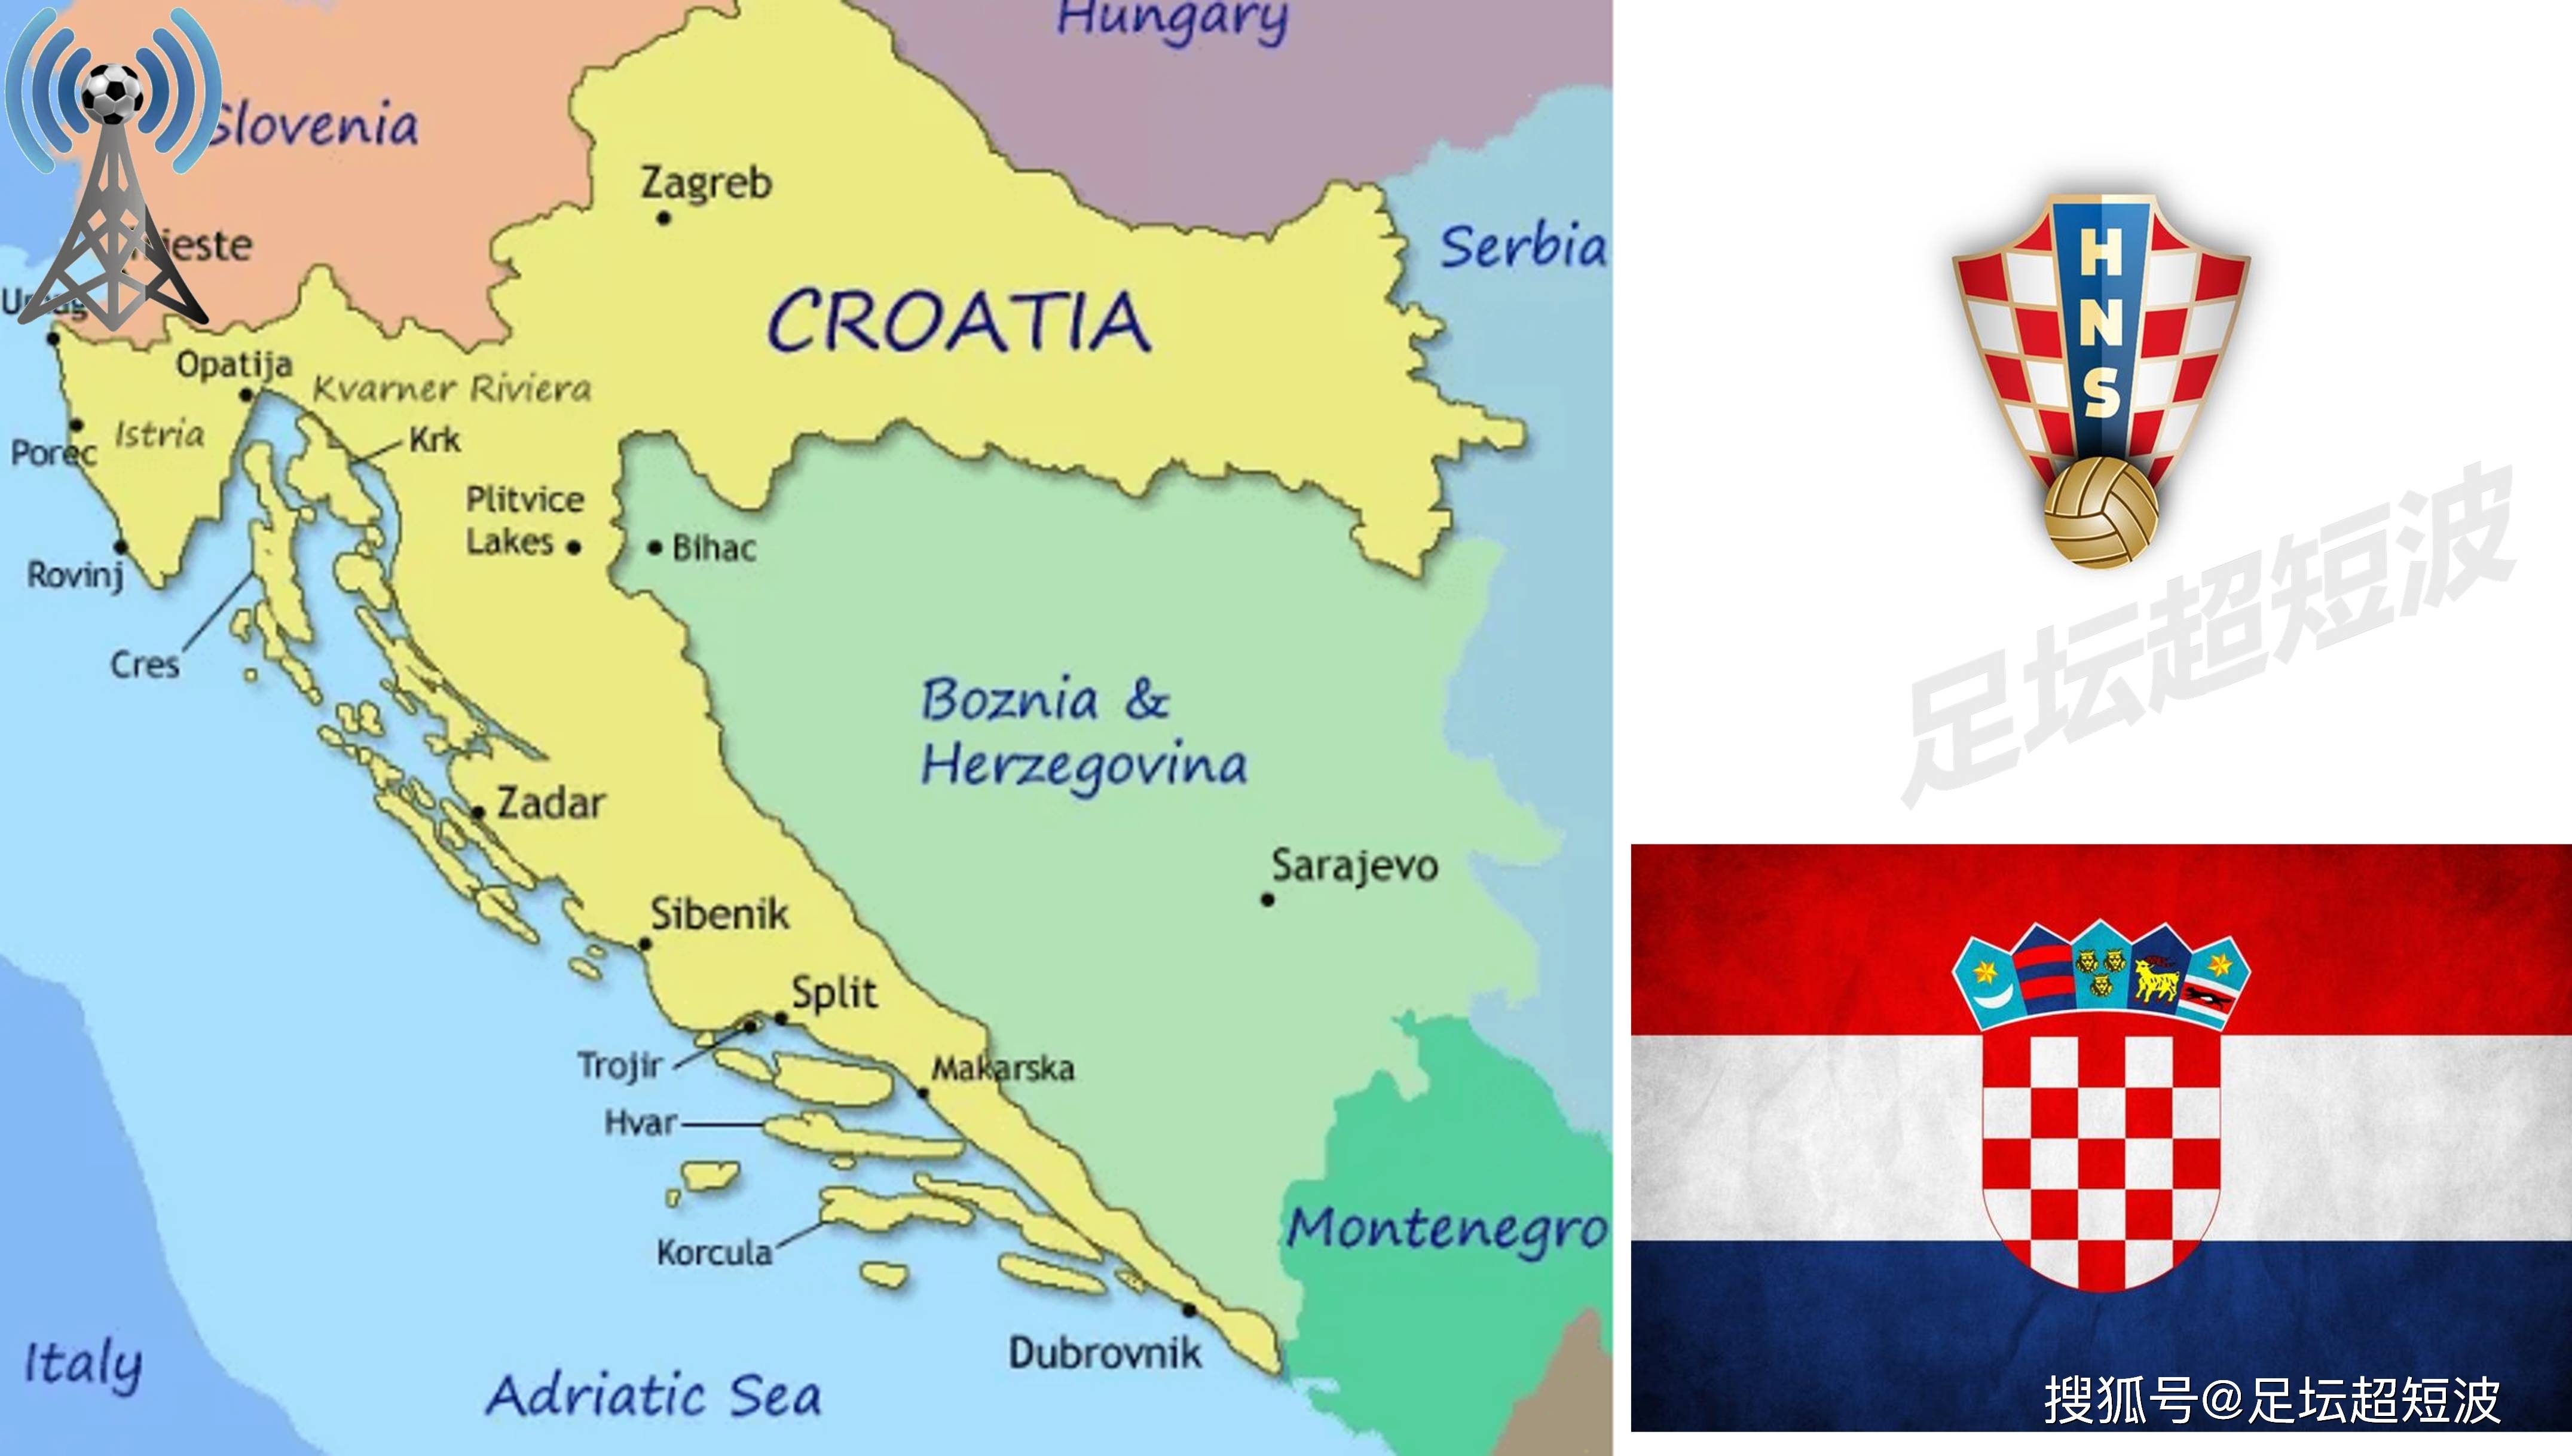 欧洲杯24强巡礼(11):克罗地亚,格子军团寄望有所突破